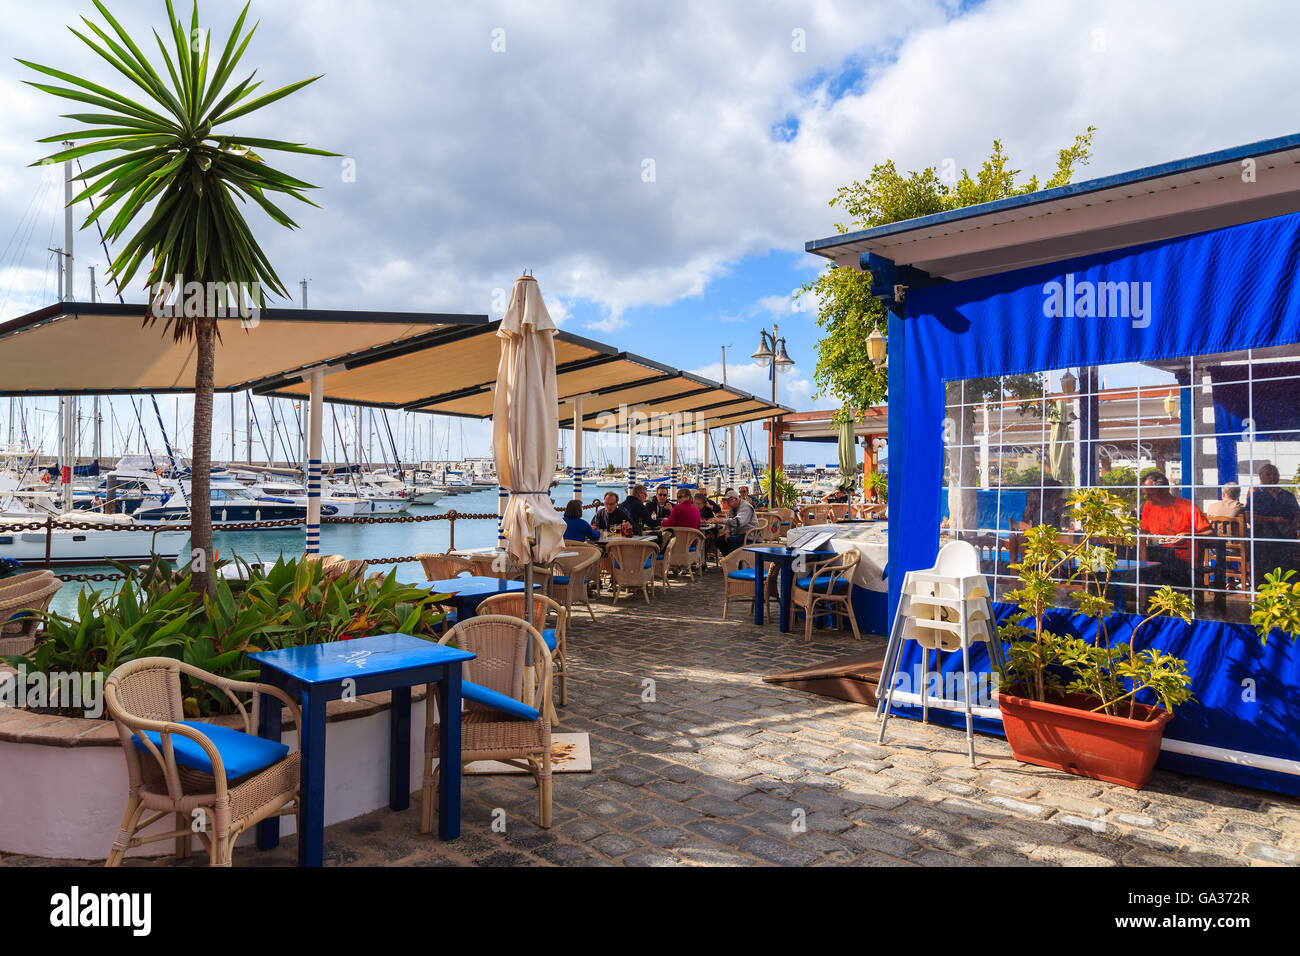 MARINA RUBICON, Lanzarote Island - Jan 17, 2015: ristorante in porto con persone a pranzo nel Rubicone yacht port. Lanzarote è più isola settentrionale nell arcipelago delle isole Canarie. Foto Stock